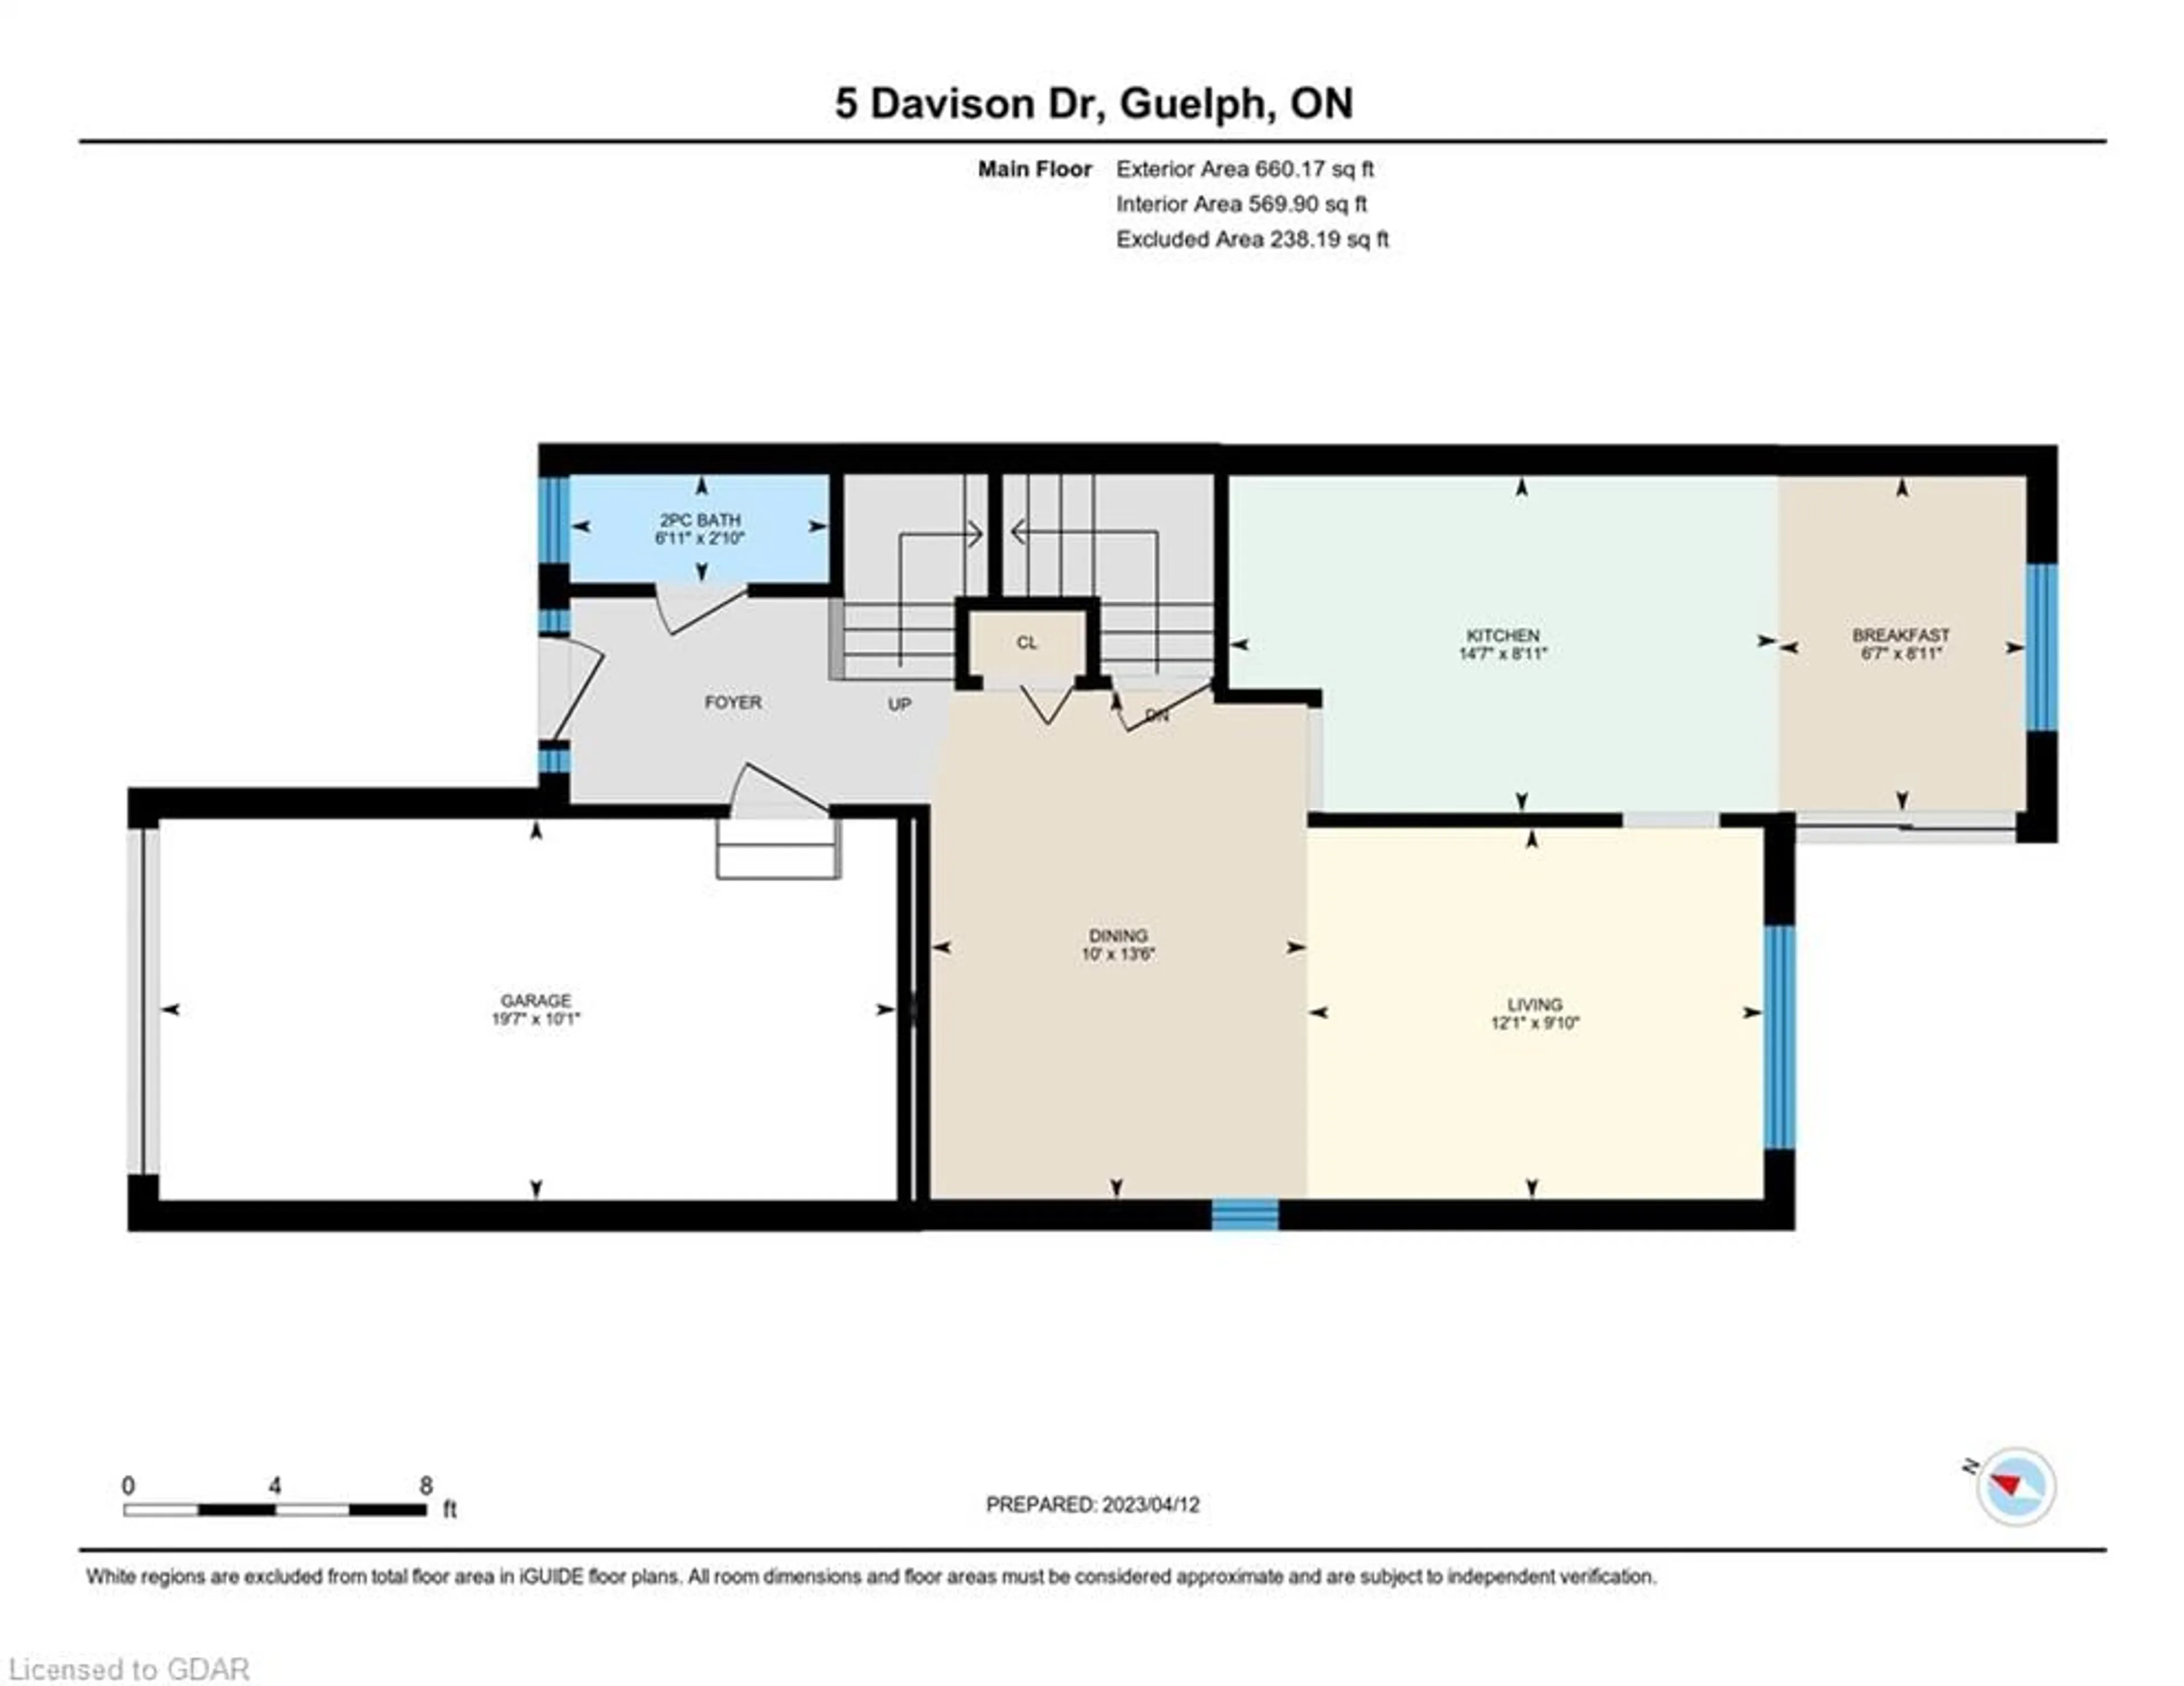 Floor plan for 5 Davison Dr, Guelph Ontario N1E 0C1